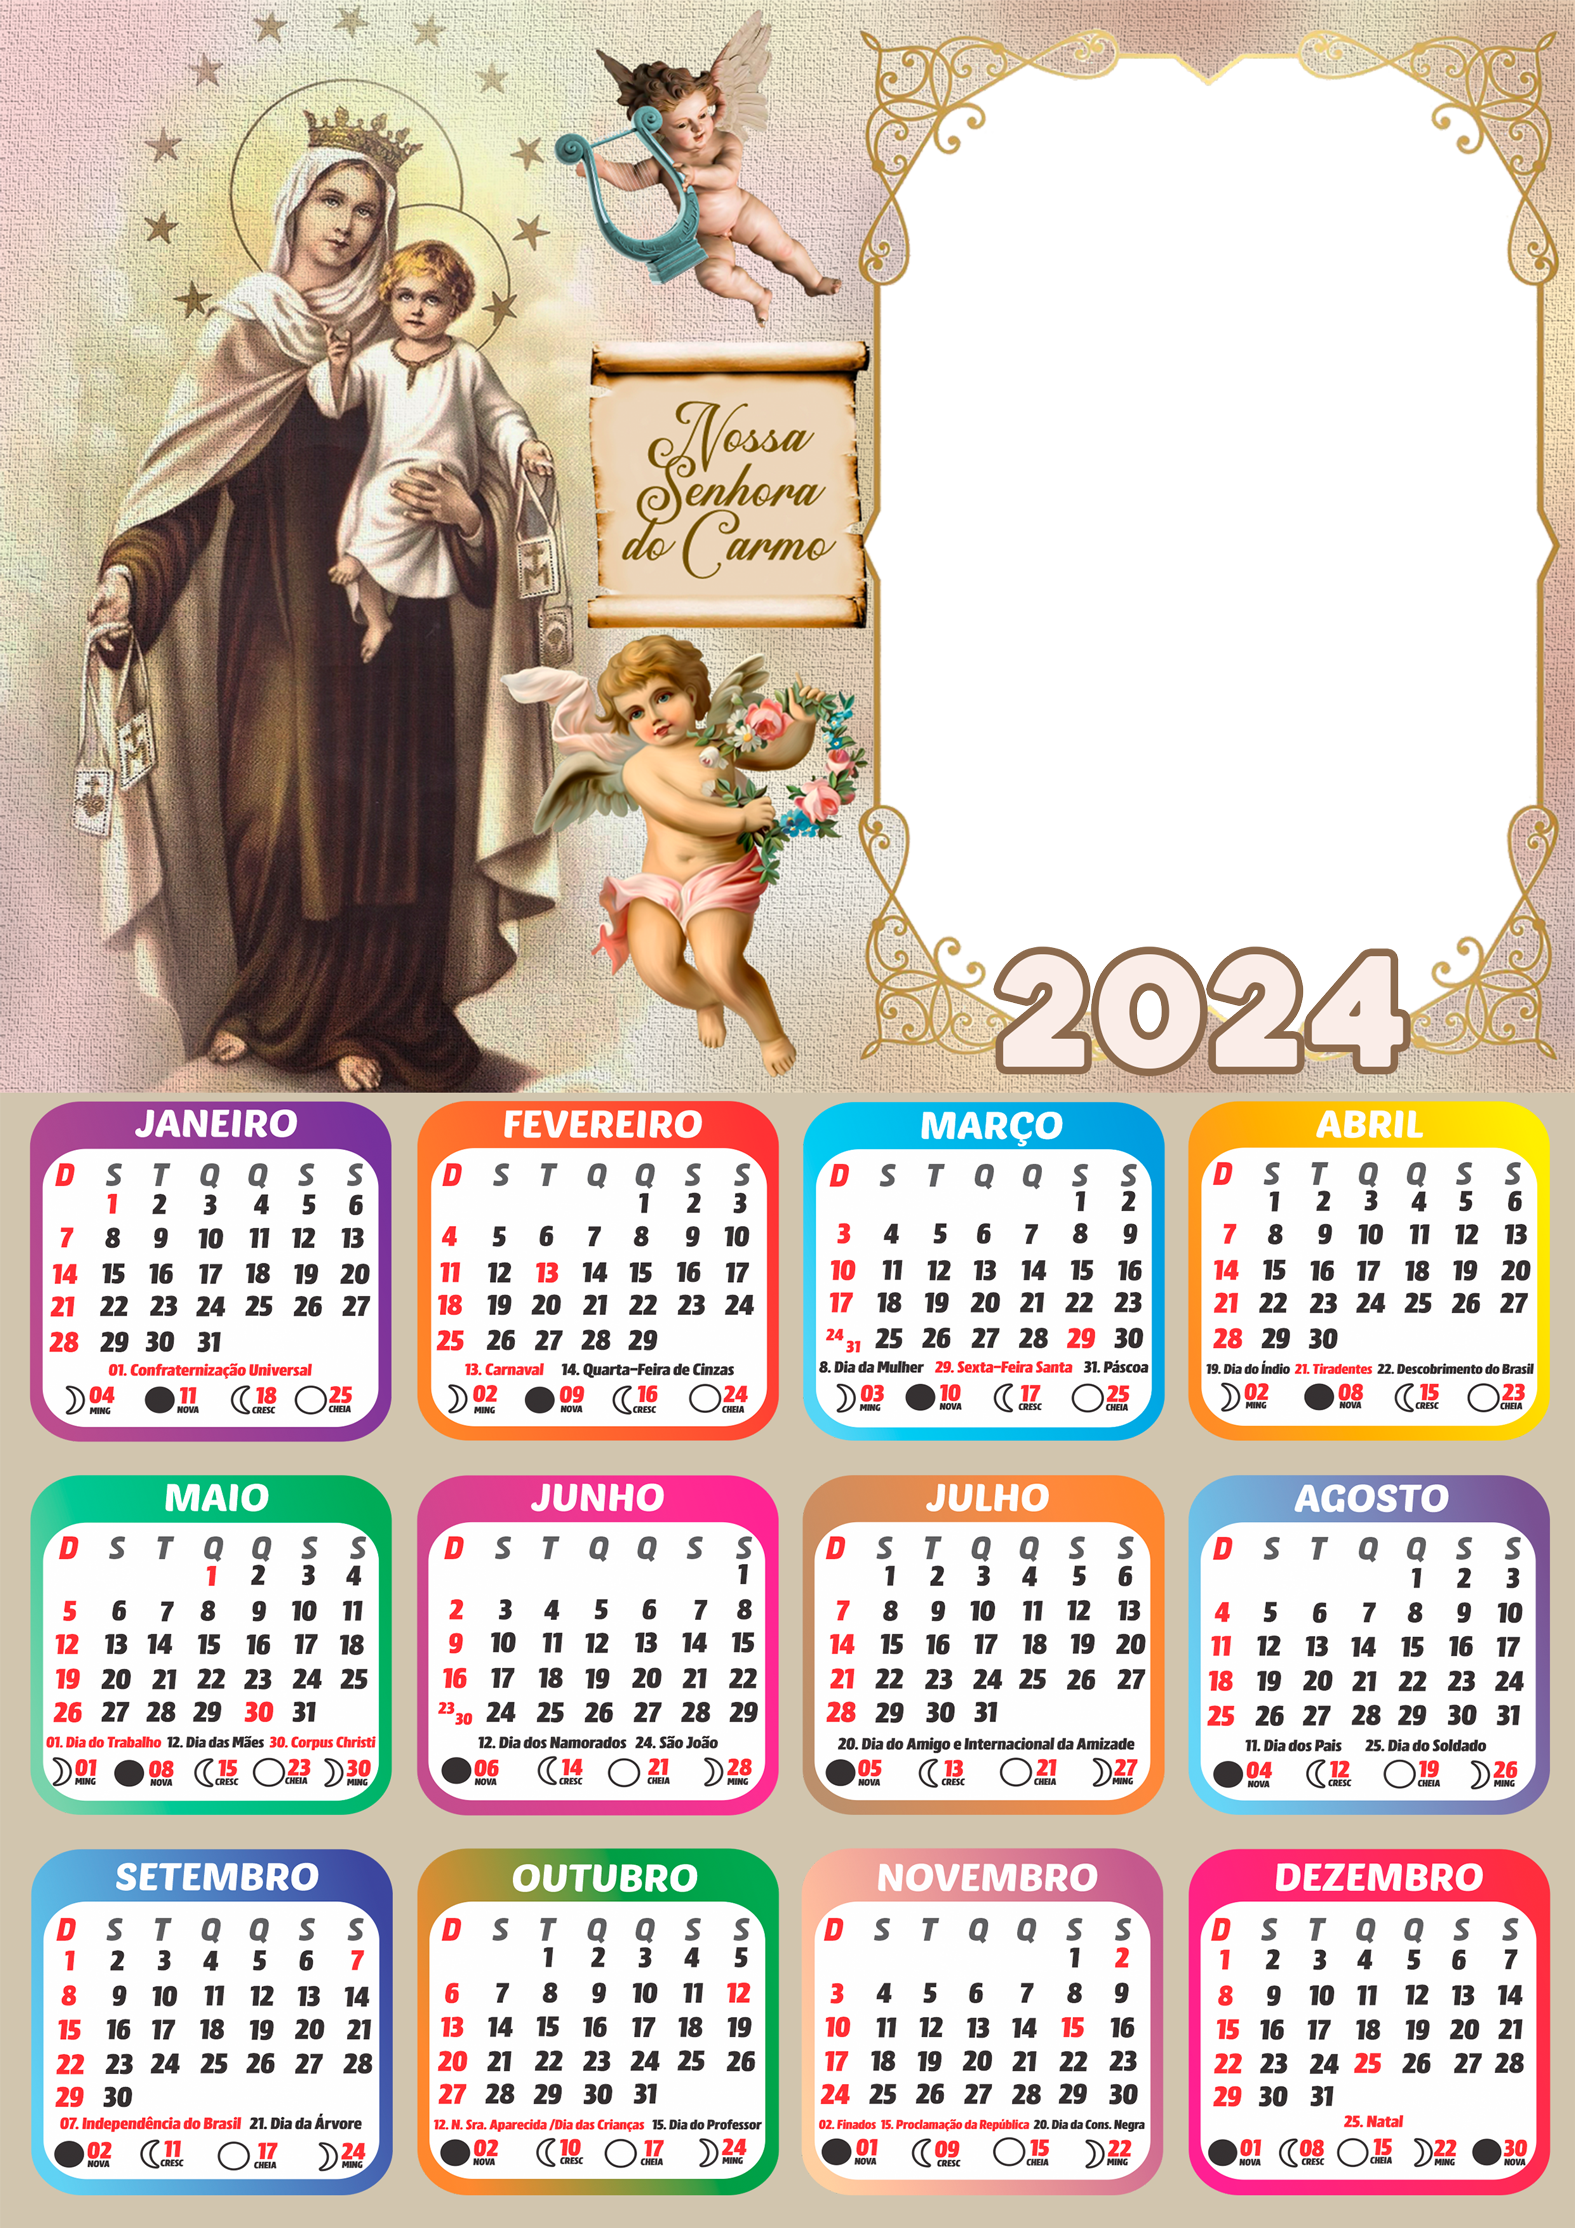 Montagem de Foto Calendário 2024 Nossa Senhora do Carmo Imagem Legal